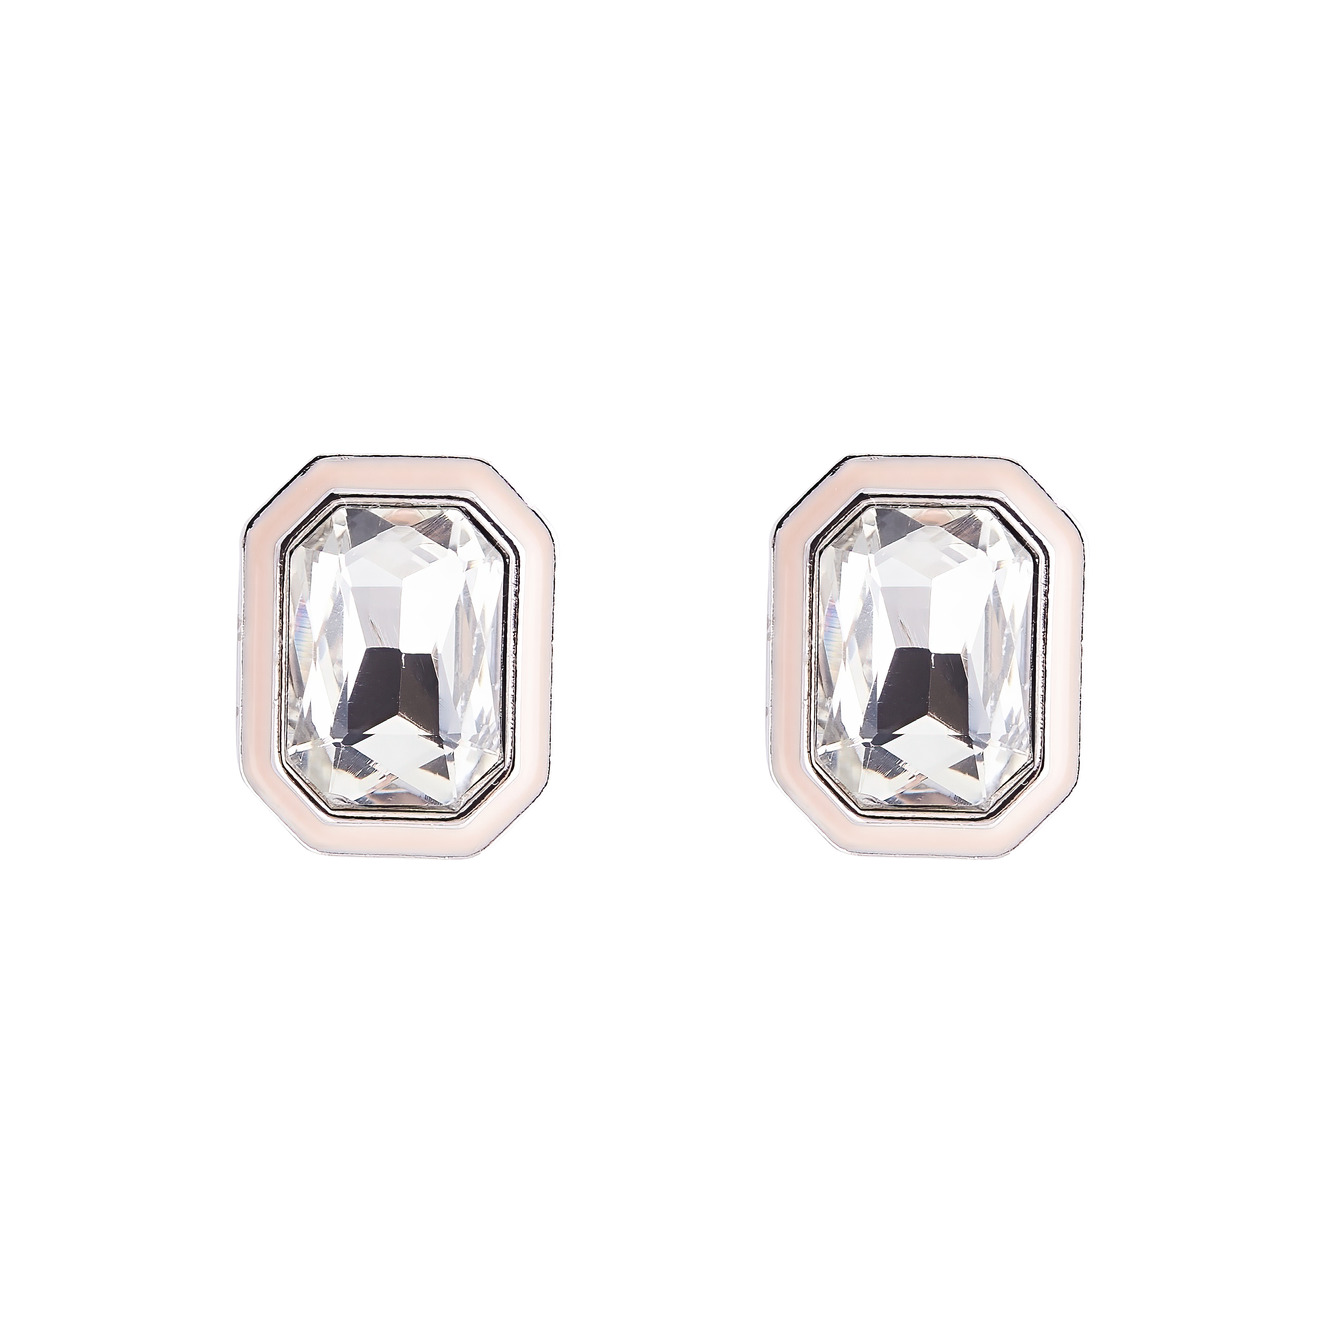 herald percy серебристые серьги кольца с белыми кристаллами Herald Percy Серебристые серьги с белыми кристаллами и розовой эмалью